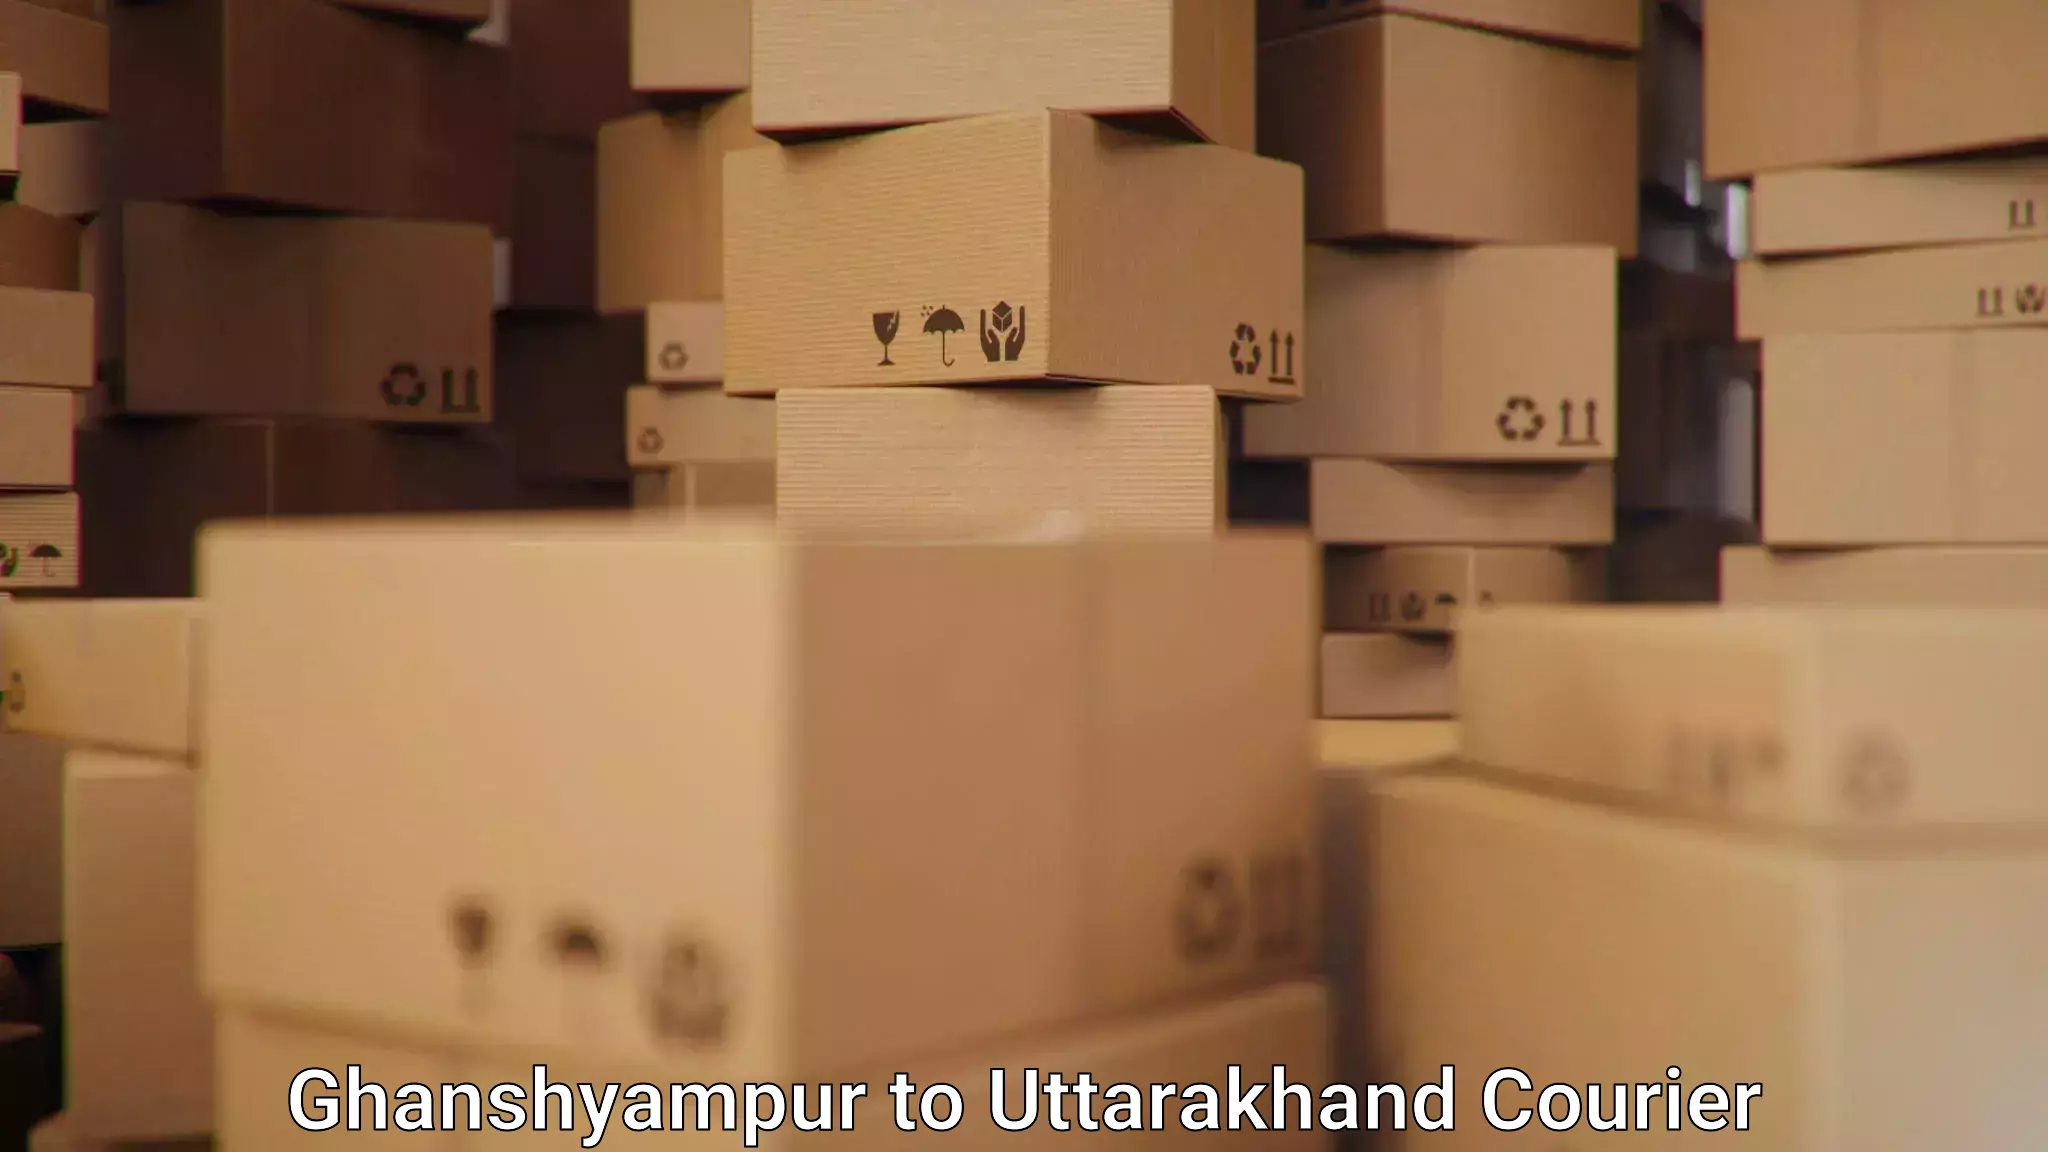 Versatile courier offerings Ghanshyampur to Uttarakhand